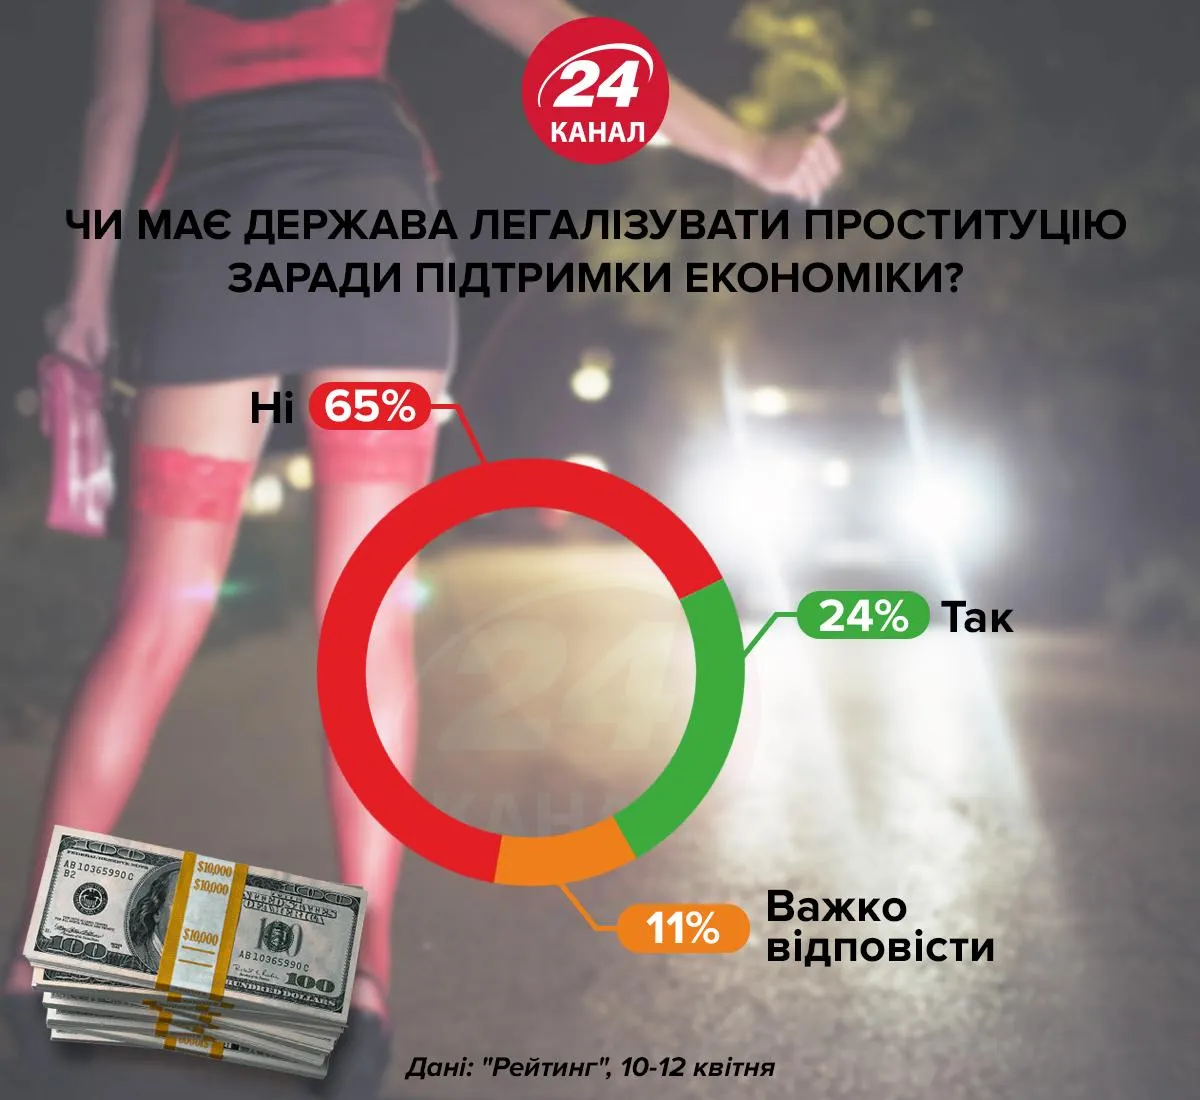 легалізація проституції в Україні опитування статистика за і проти